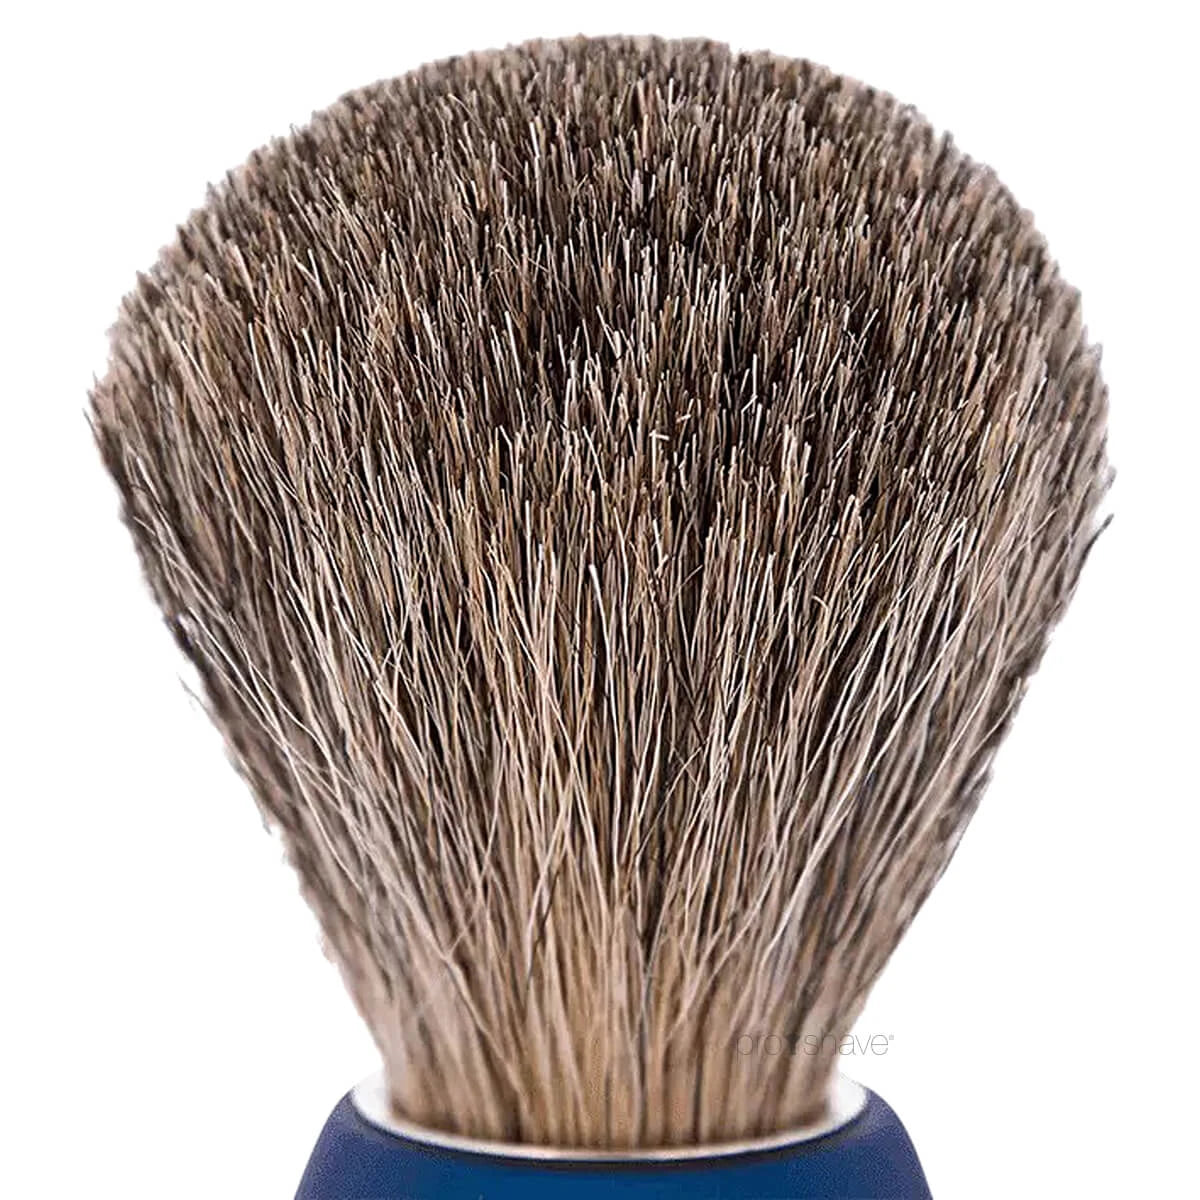 Plisson Shaving Brush, Russian Grey Badger & Night Blue- Size 12